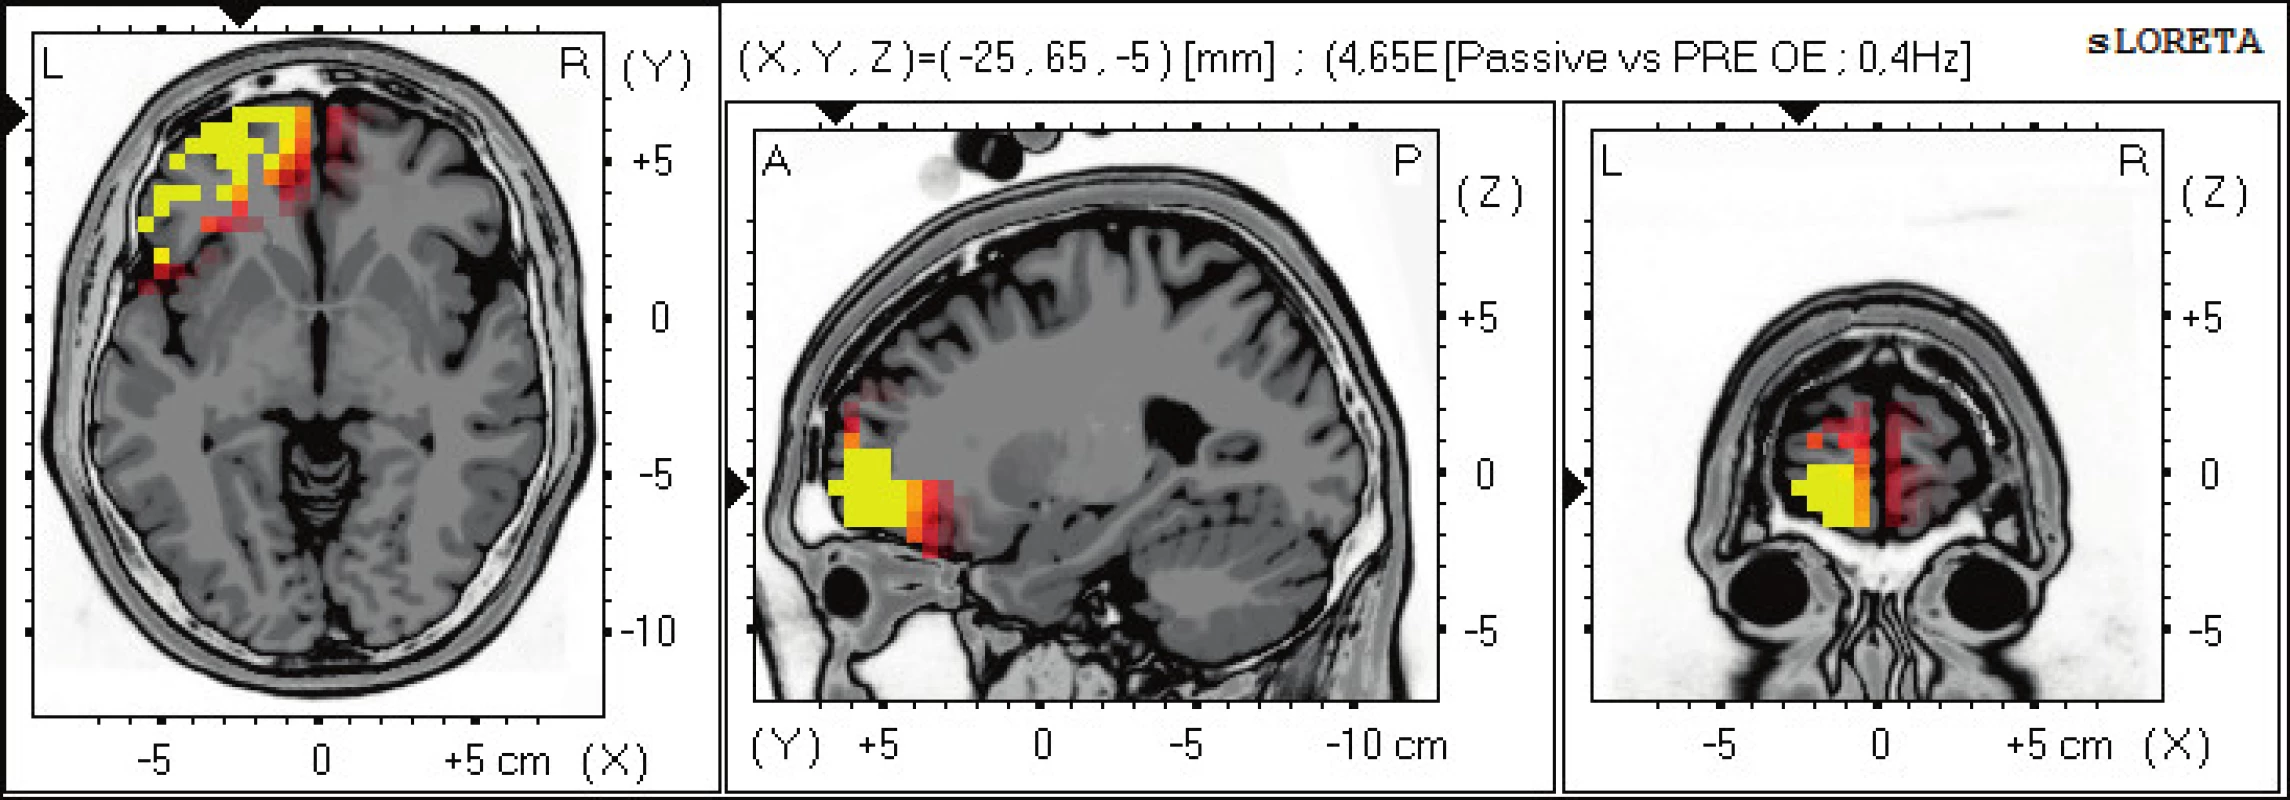 Statistické ne-parametrické mapy sLORETA diference v beta-1, 2 pásmu při porovnání pozorování pasivního sledování pohybu
prováděného terapeutem oproti klidovému záznamu při otevřených očích. Červená a žlutá barva znamená zvýšení zdrojové aktivity nad
levou hemisférou frontálně v BAs 47, 10, 11. Anatomické řezy Talairachova obrazu mají šedou barvu (L – vlevo, R – vpravo).